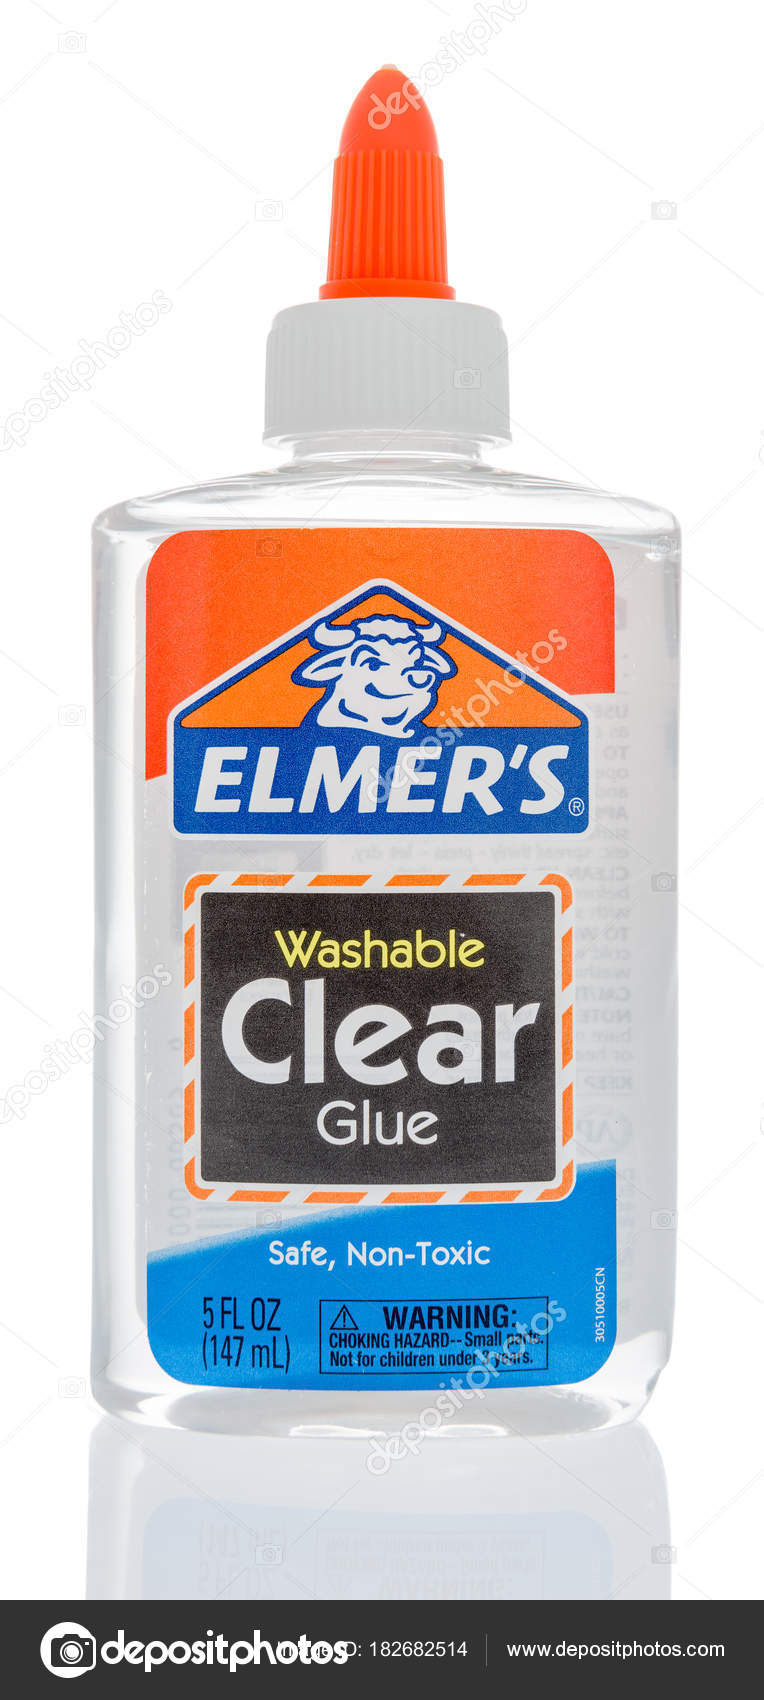 Elmer's Glow in the Dark Glue, Natural - 5 fl oz bottle